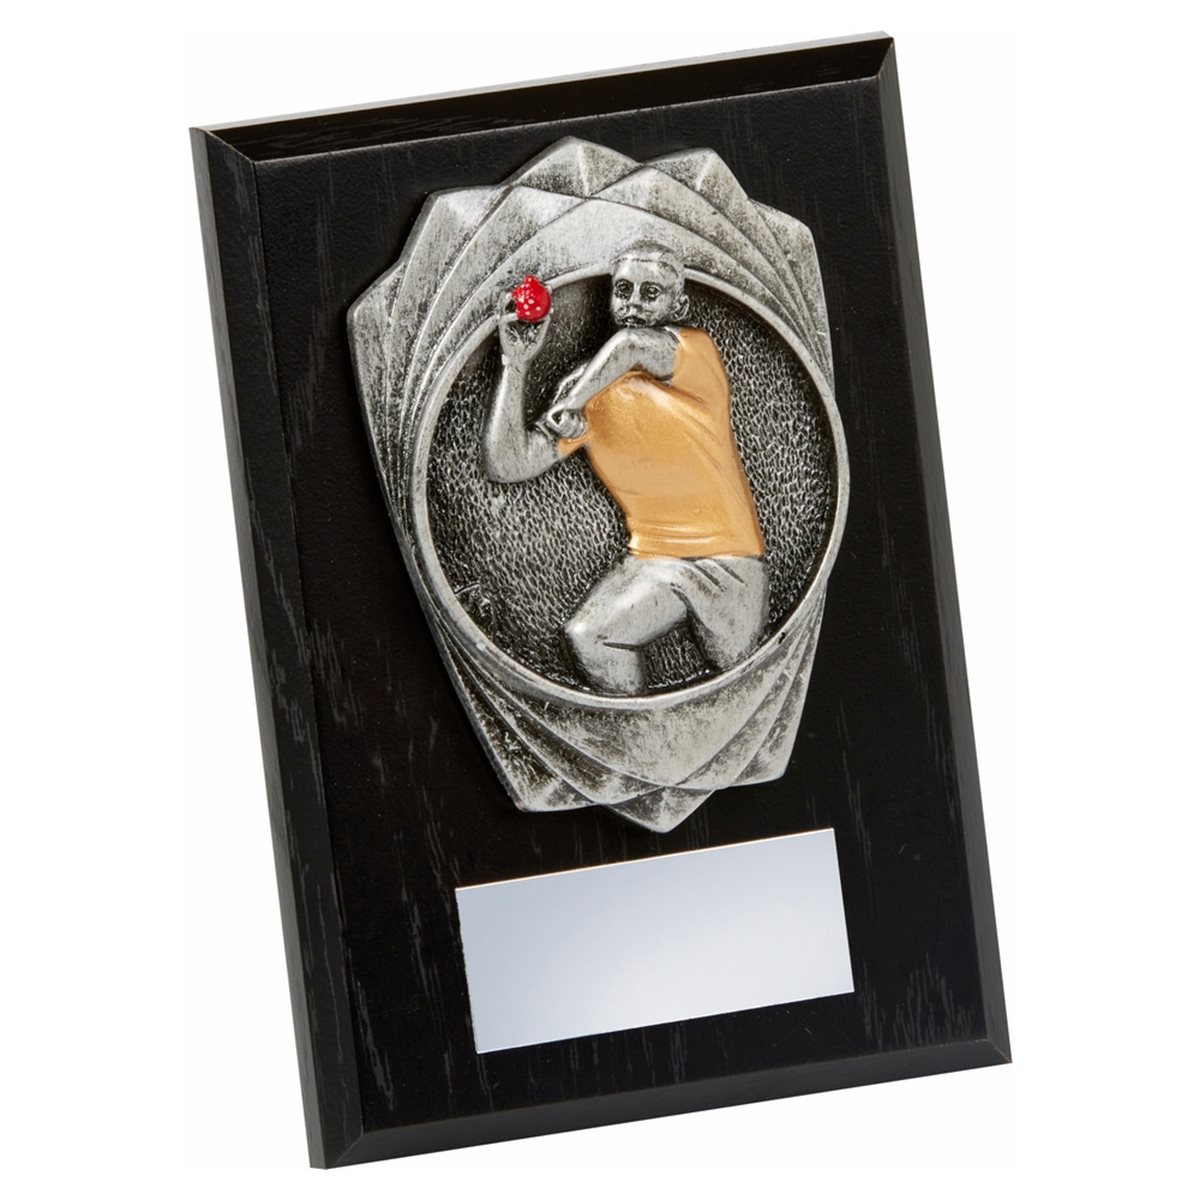 Cricket Bowler Wooden Plaque Award 1786